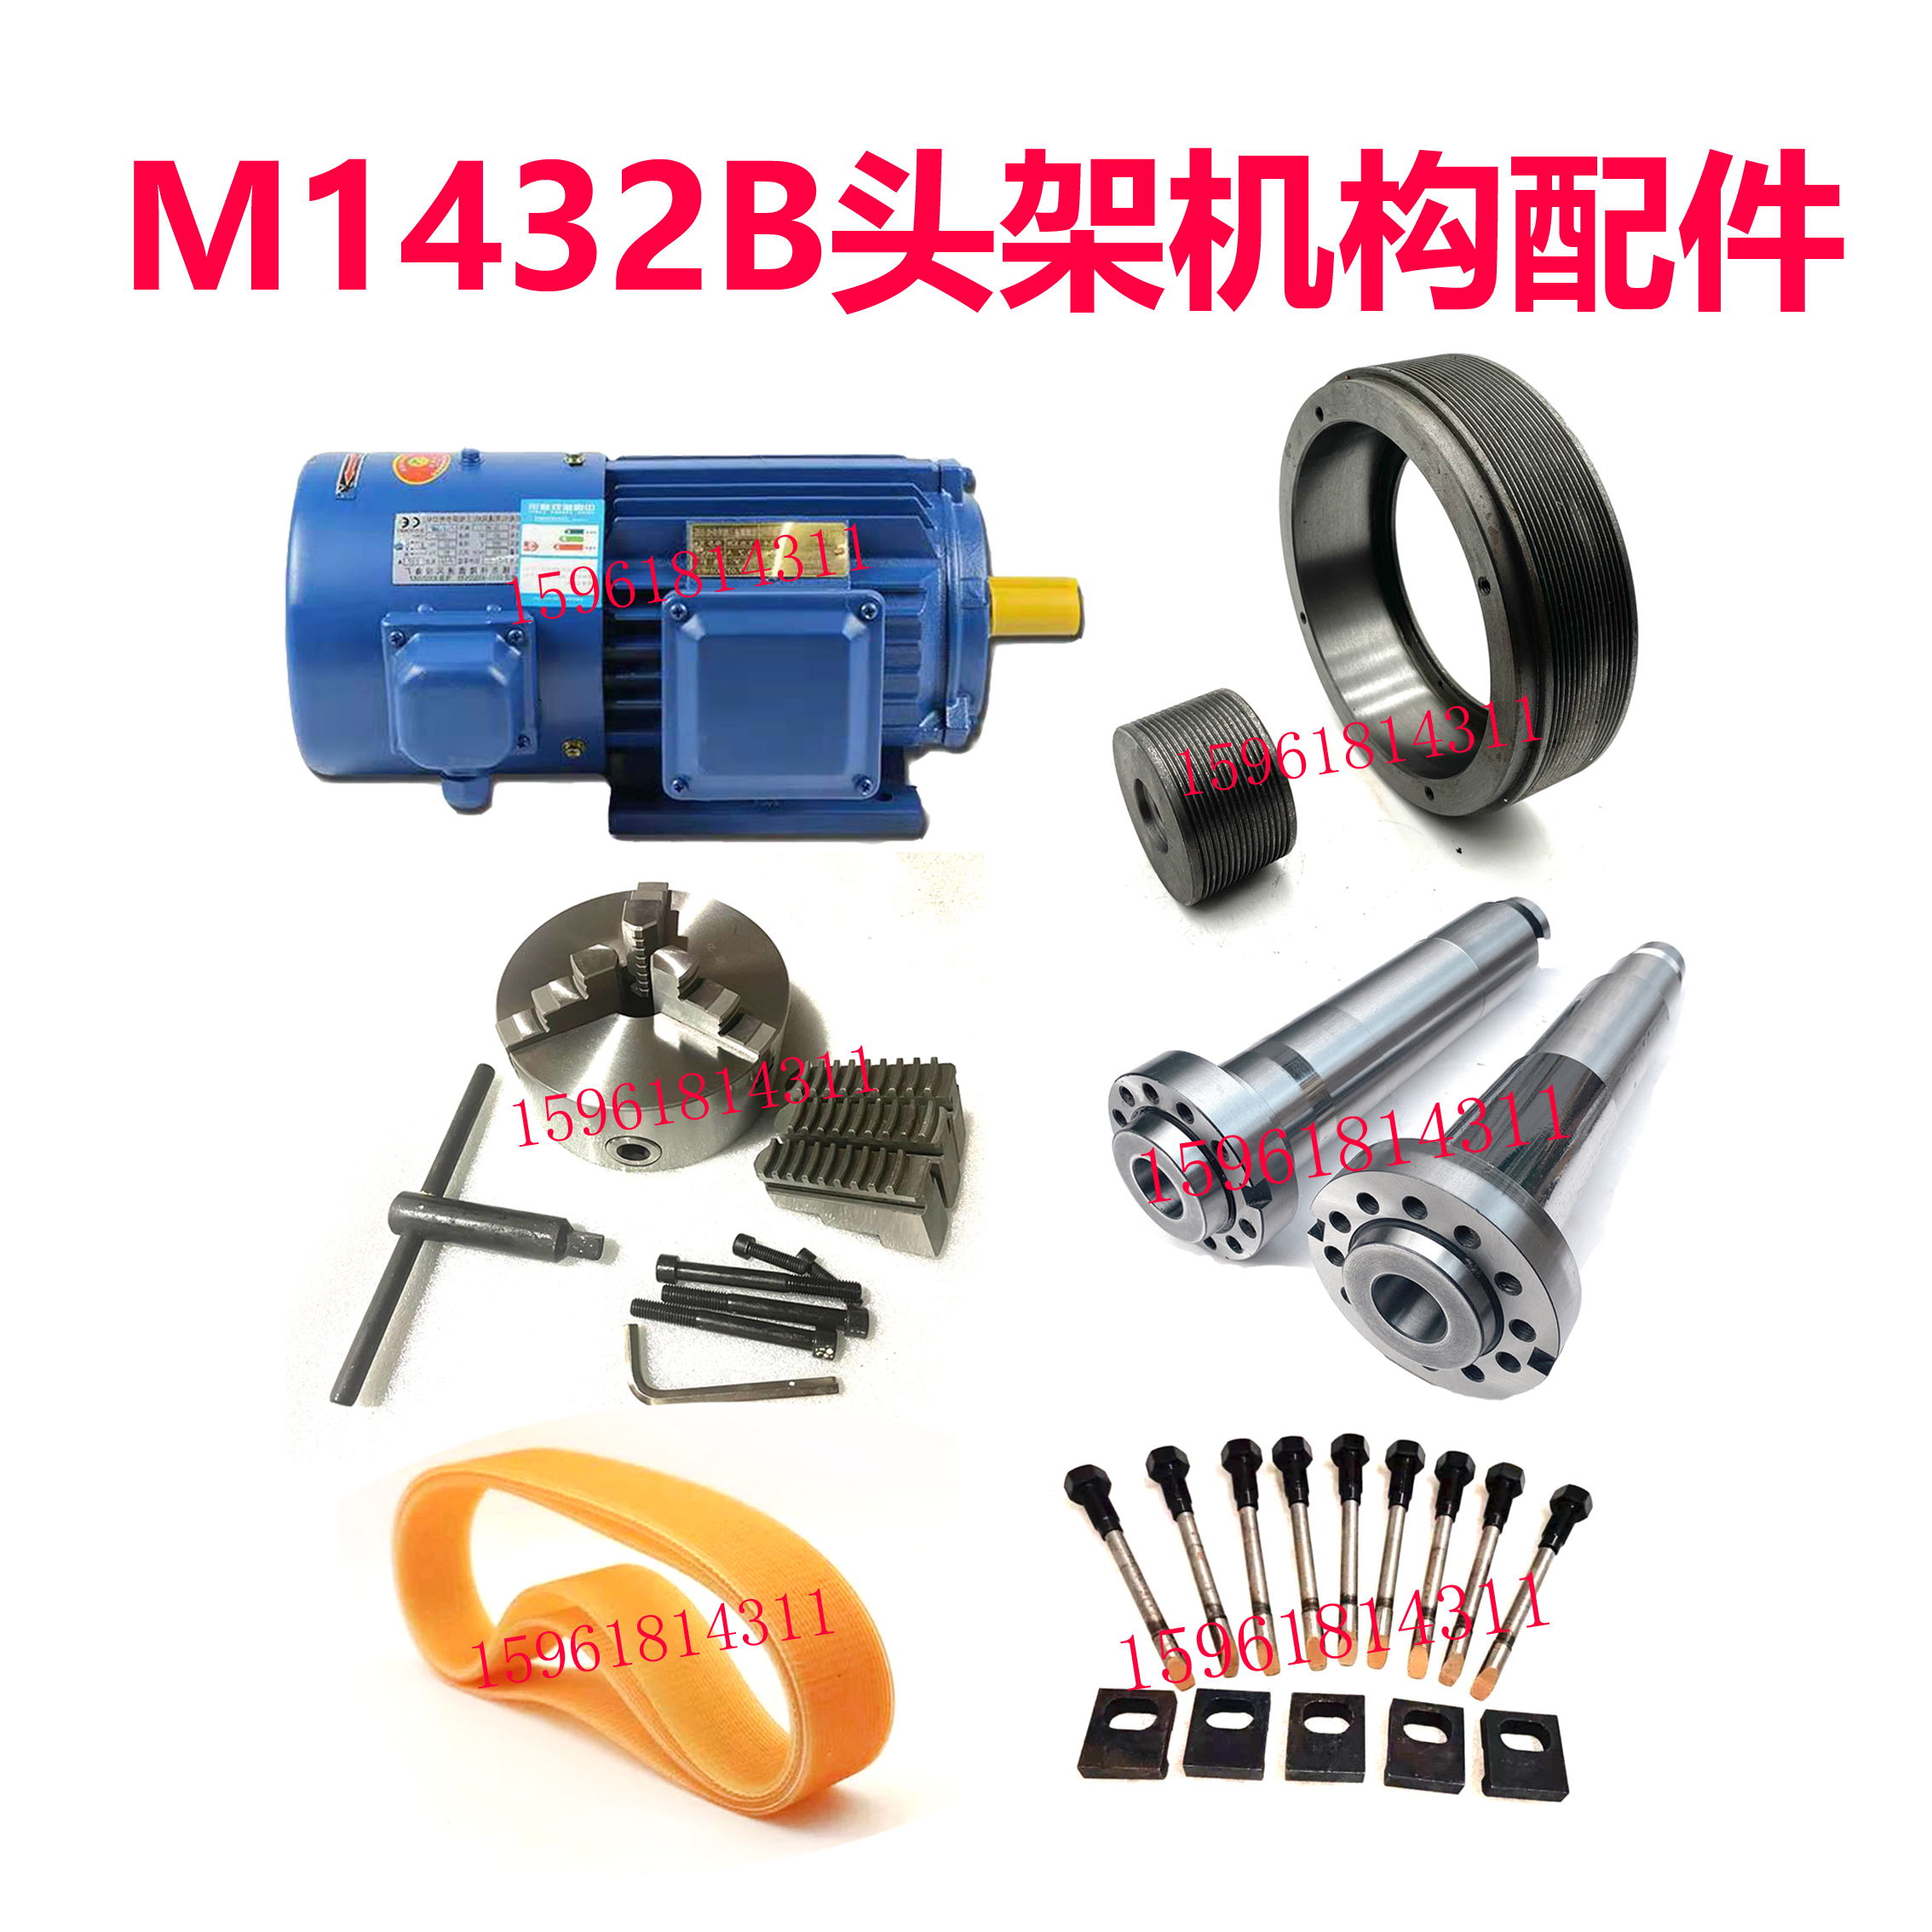 M1432B上海机床厂头架多锲带皮带轮电机三爪卡盘主轴螺丝磨床配件